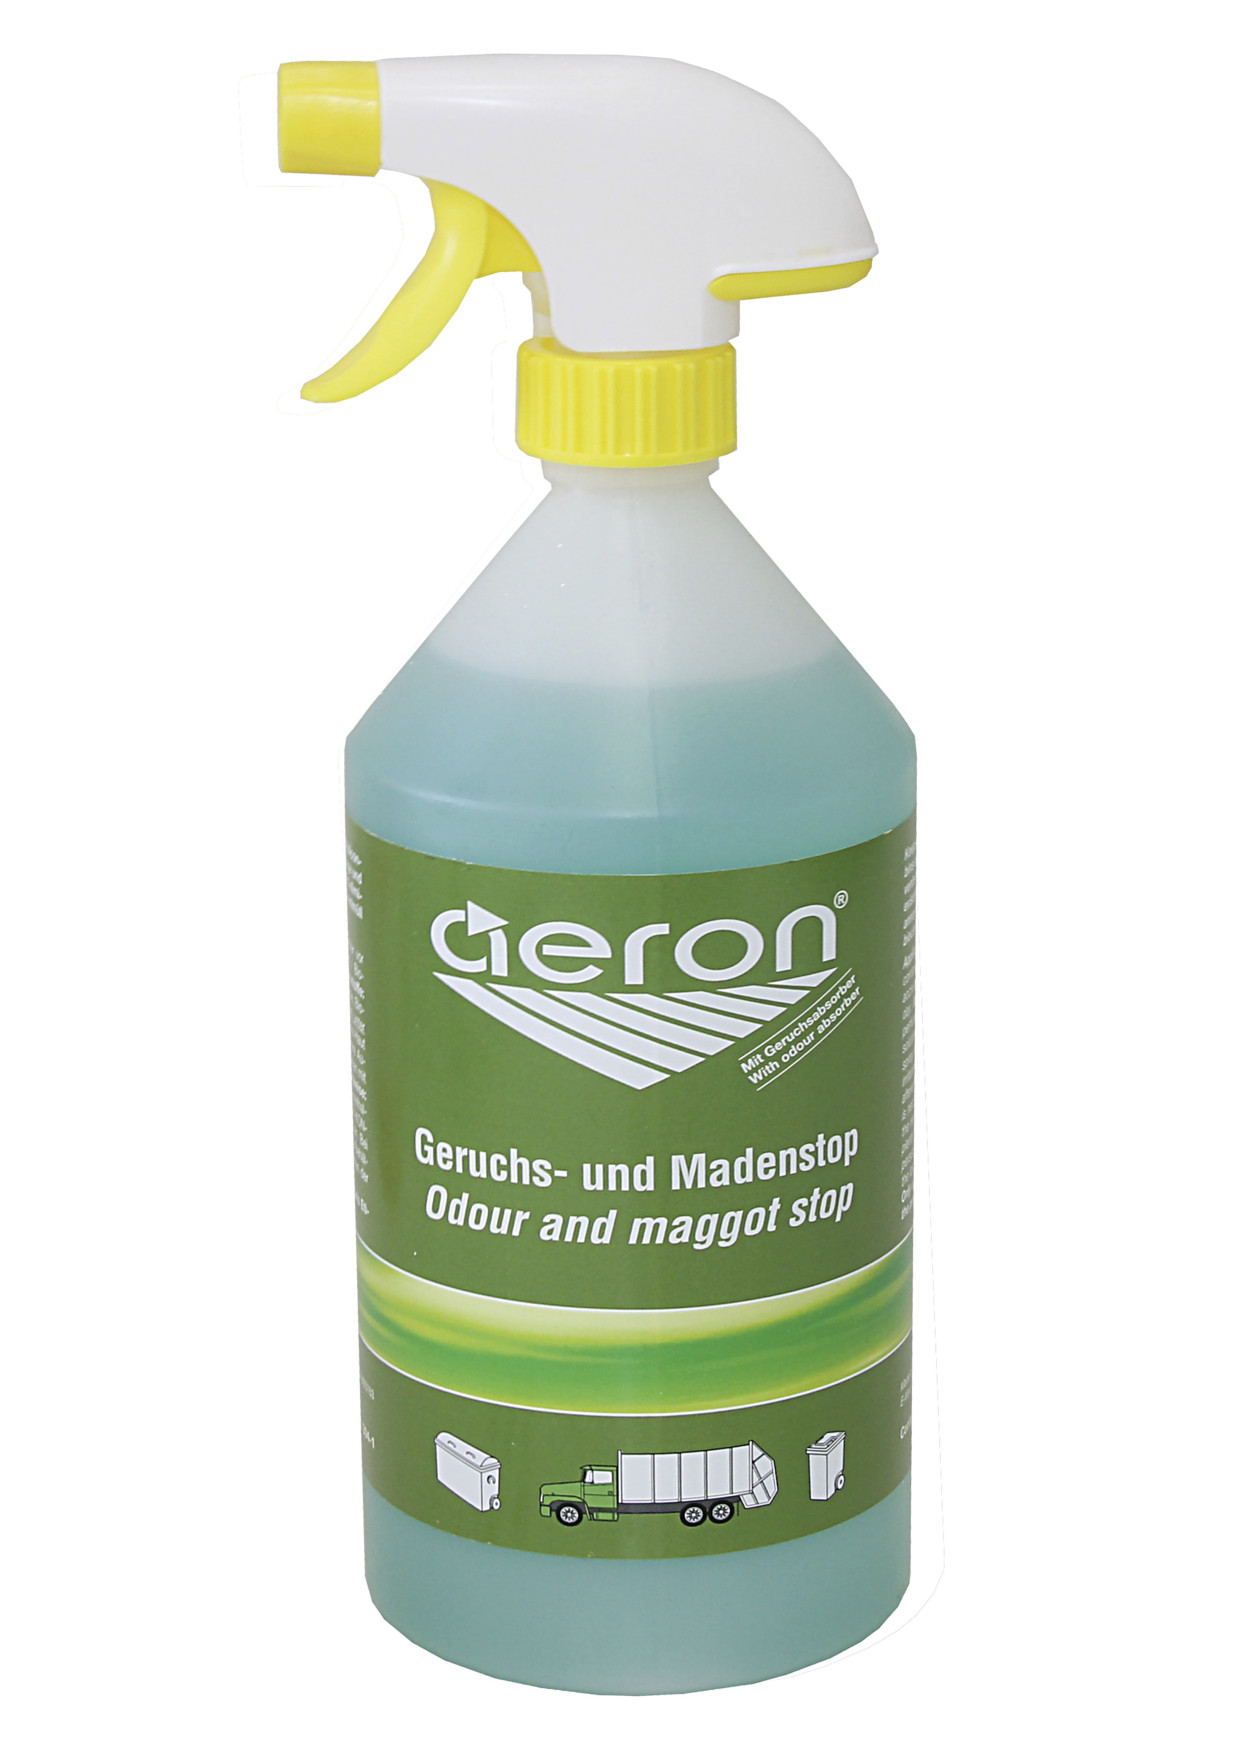 Aeron Geruchs- und Madenstop, 1 Liter Sprühflasche, 1 Liter